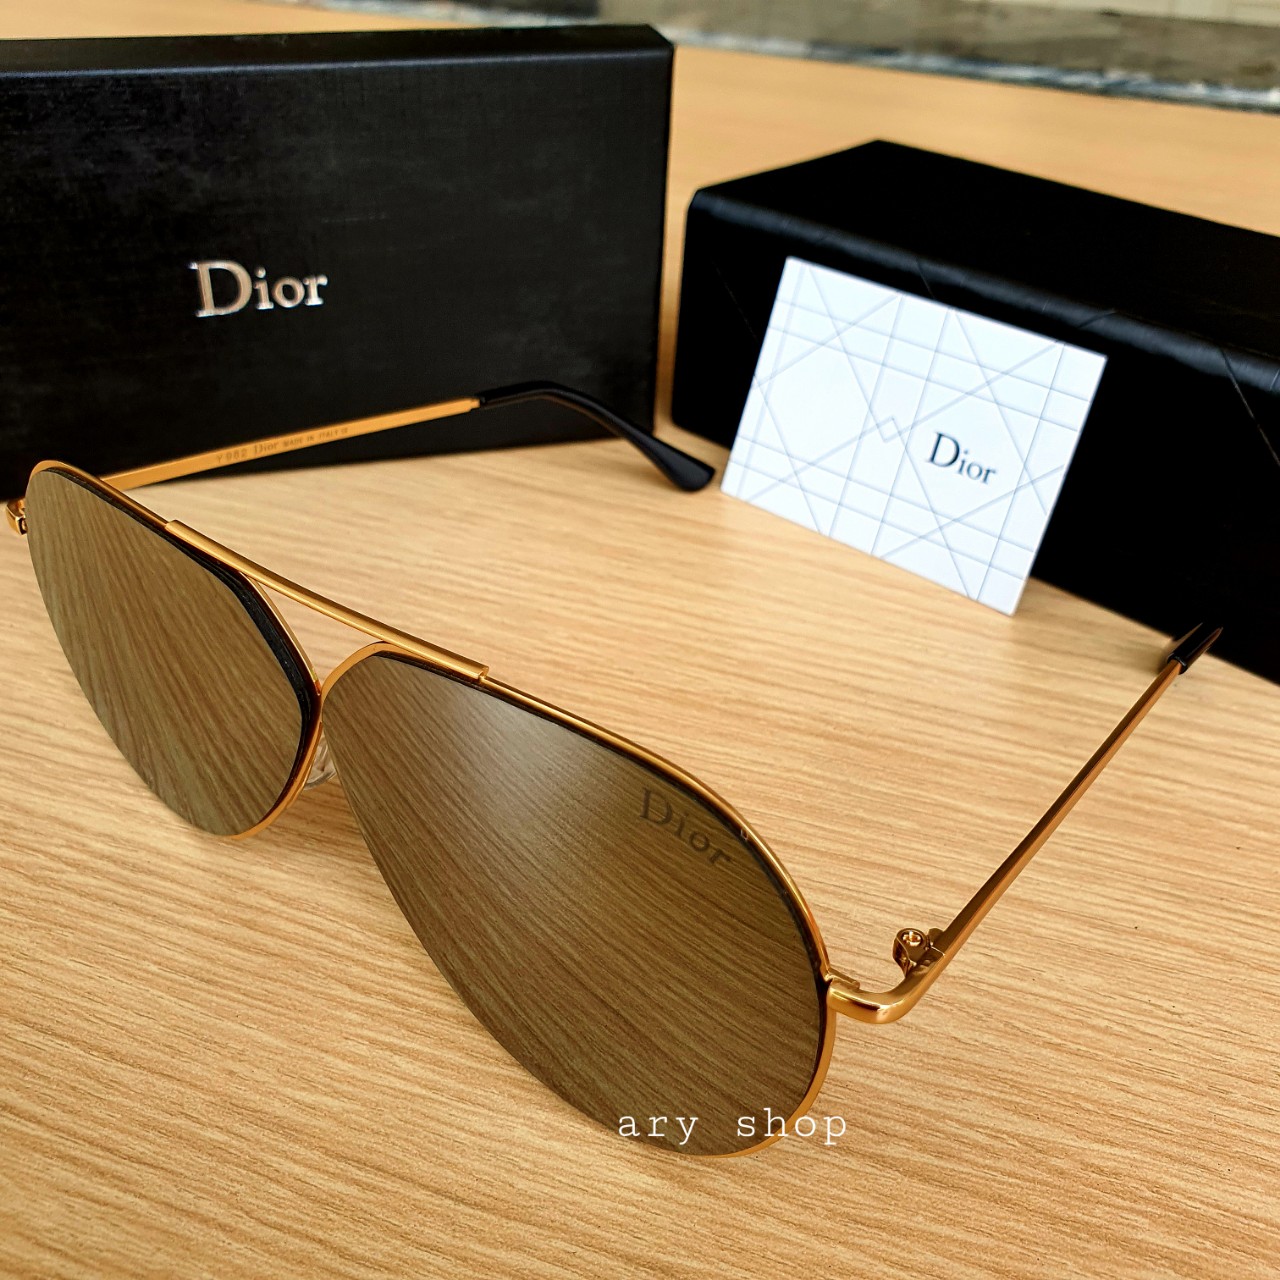 [งานพรีเมี่ยม] แว่นตา Dior แว่นตา CD ทรงกลม เลนส์ปรอท อุปกรณ์ครบ